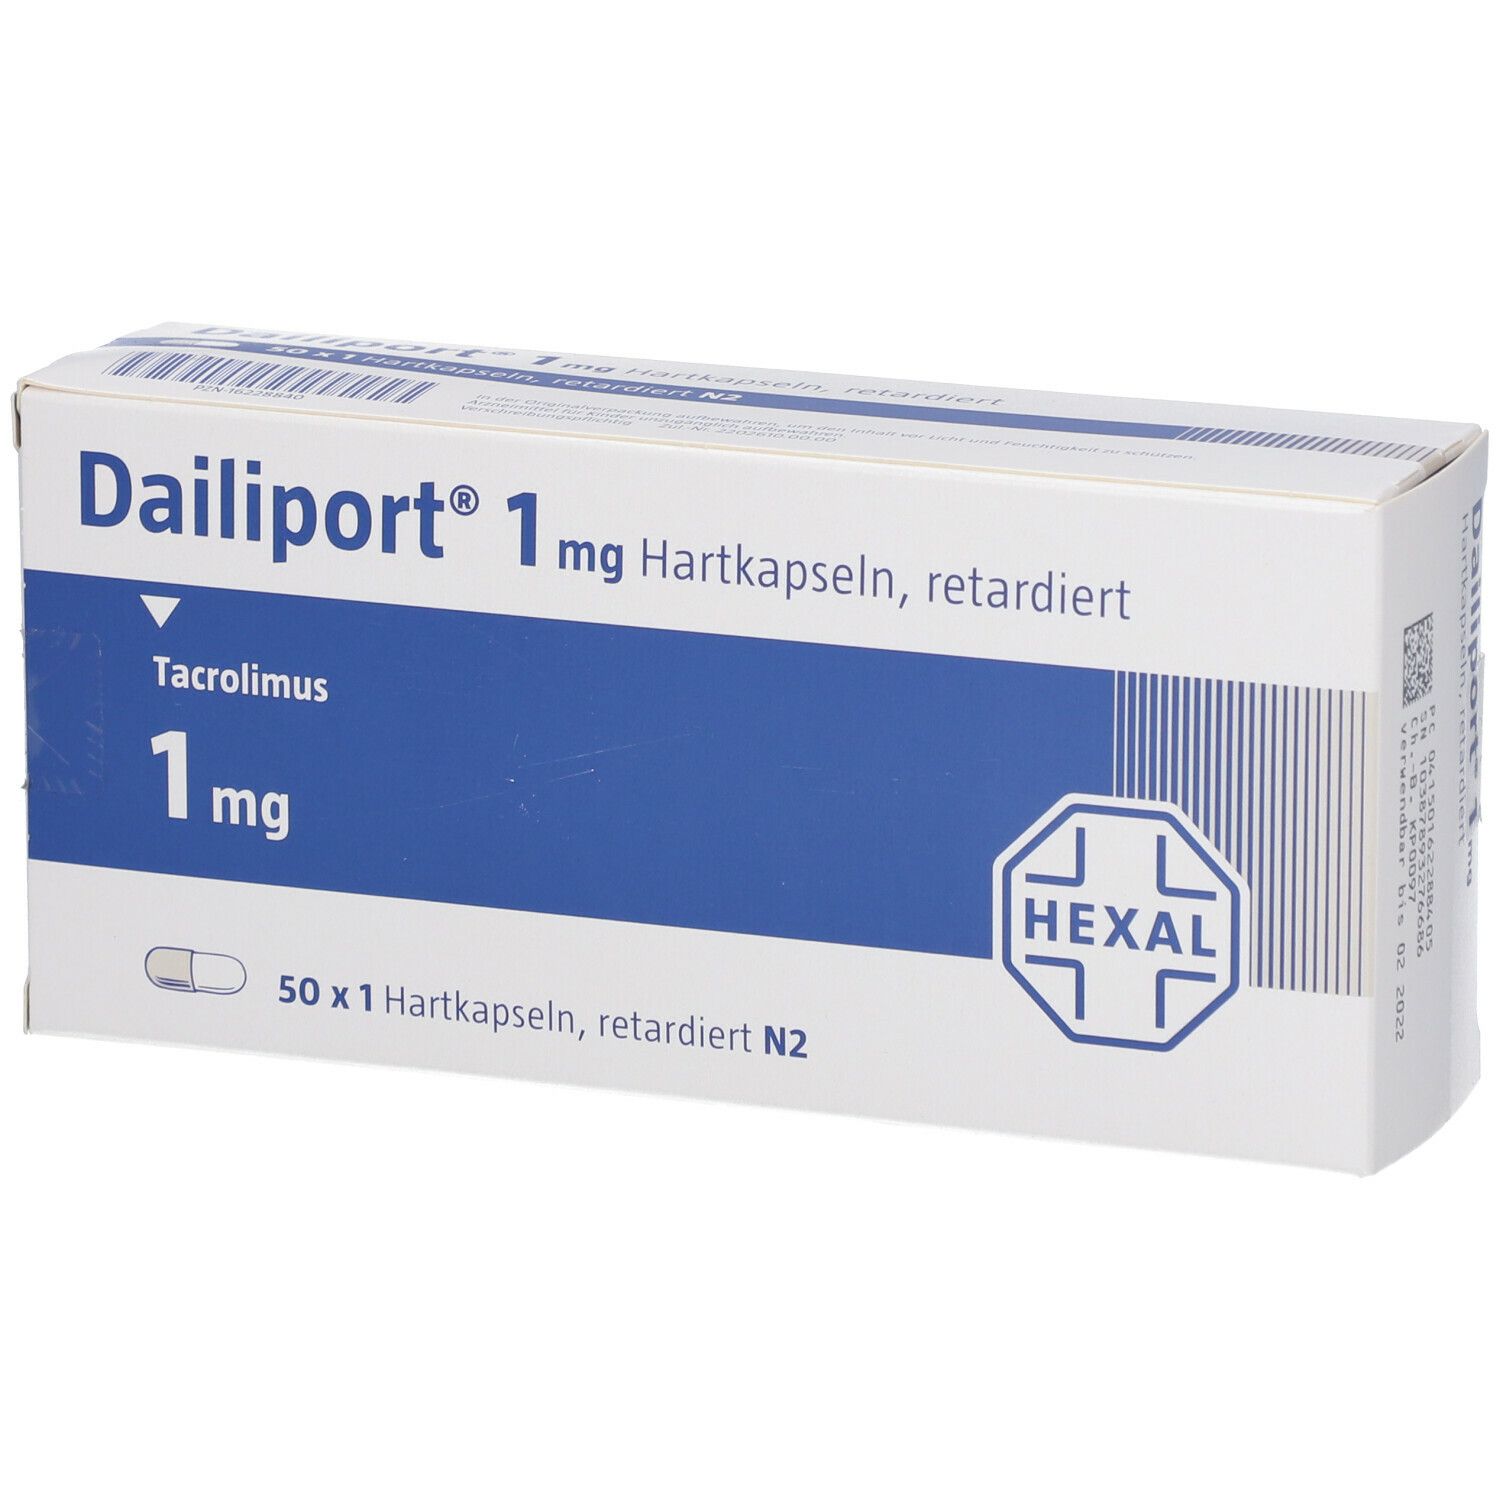 Dailiport® 1 mg